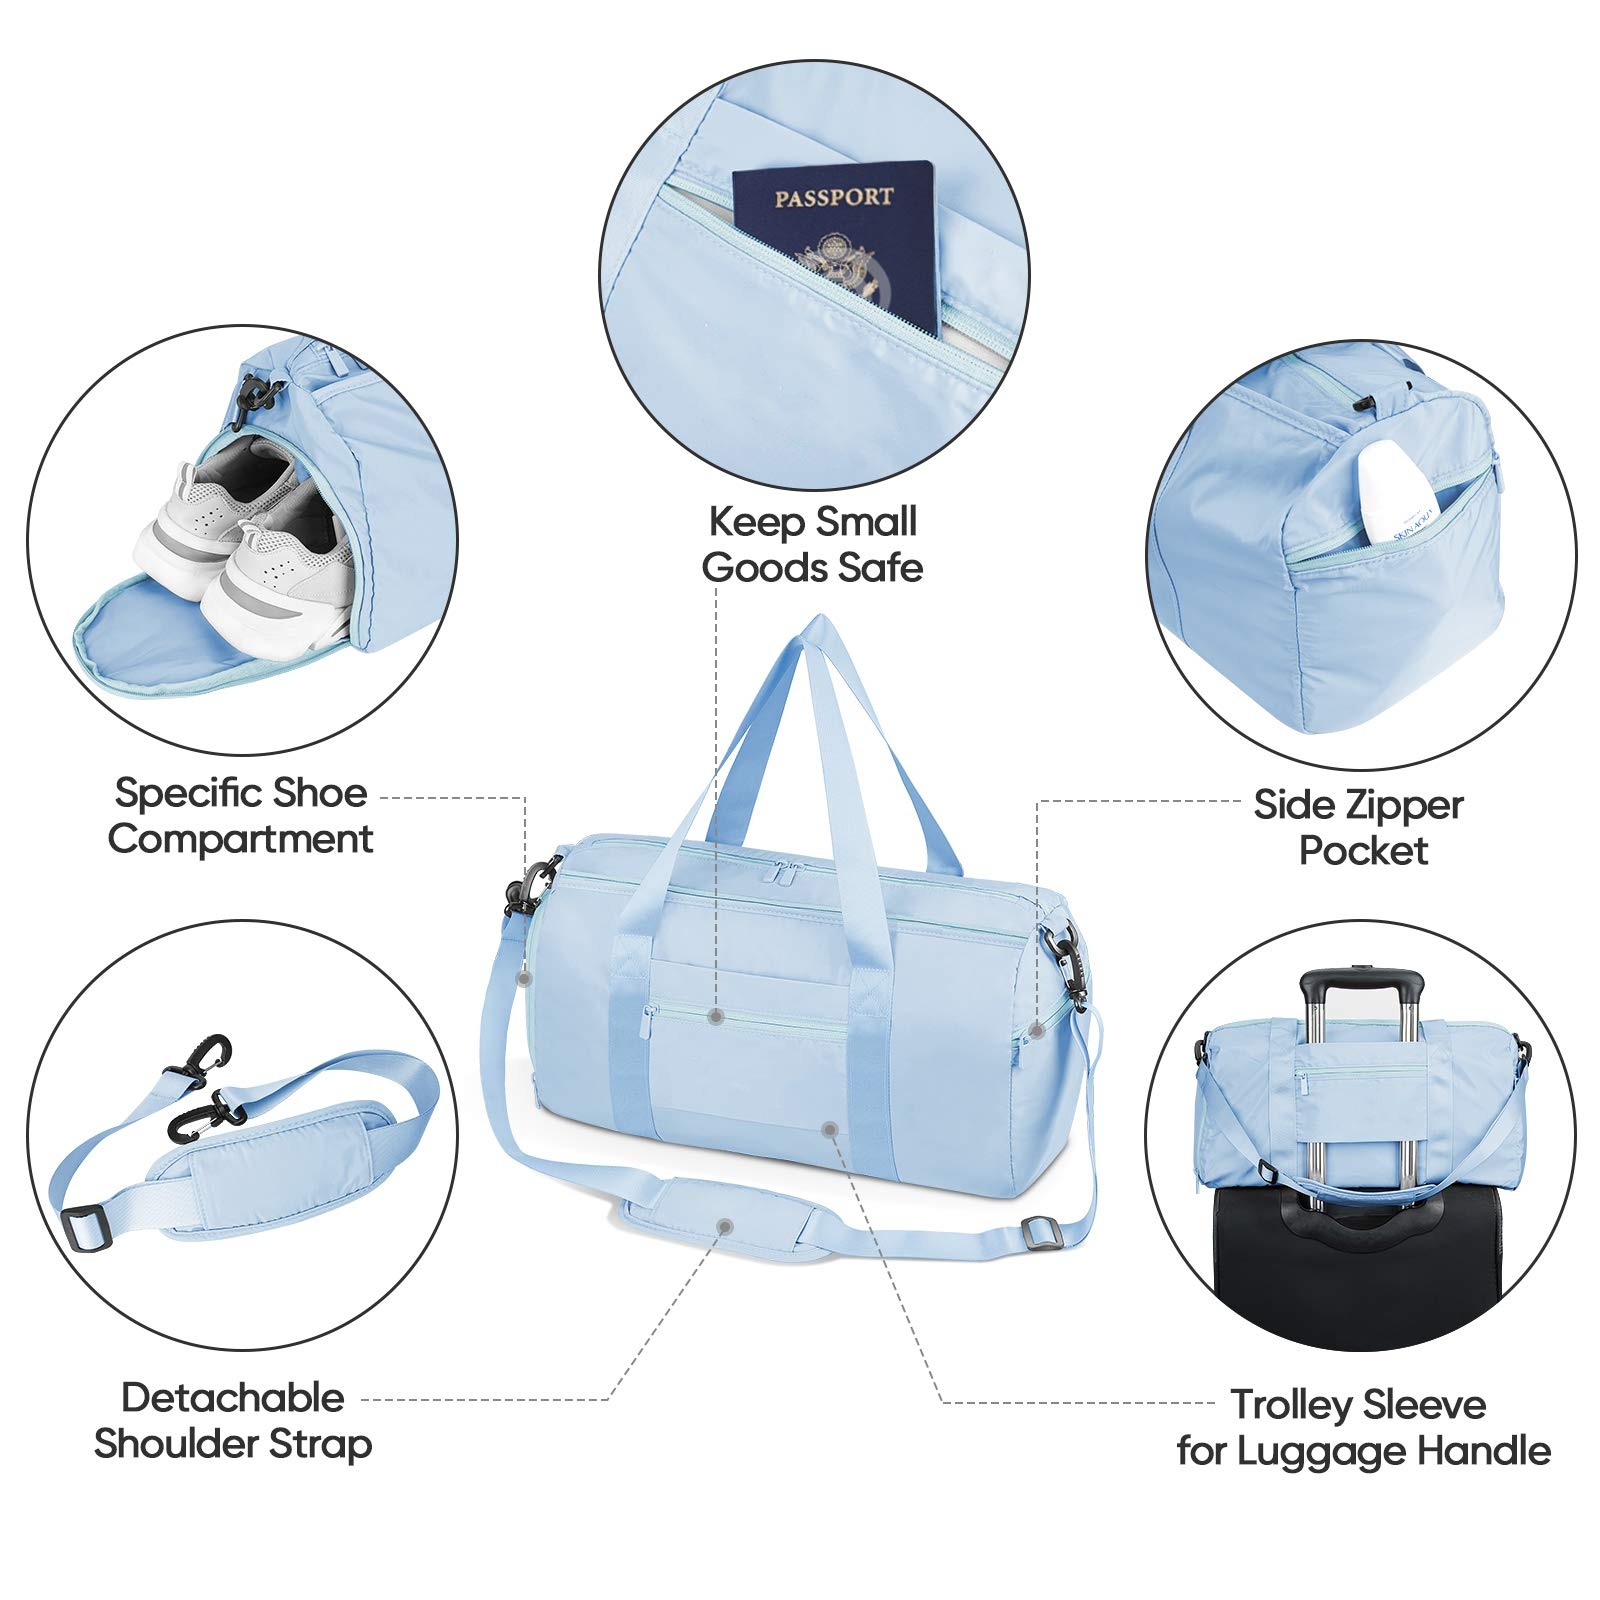 Waterproof Gym Duffel Bag Wholesale Product Details